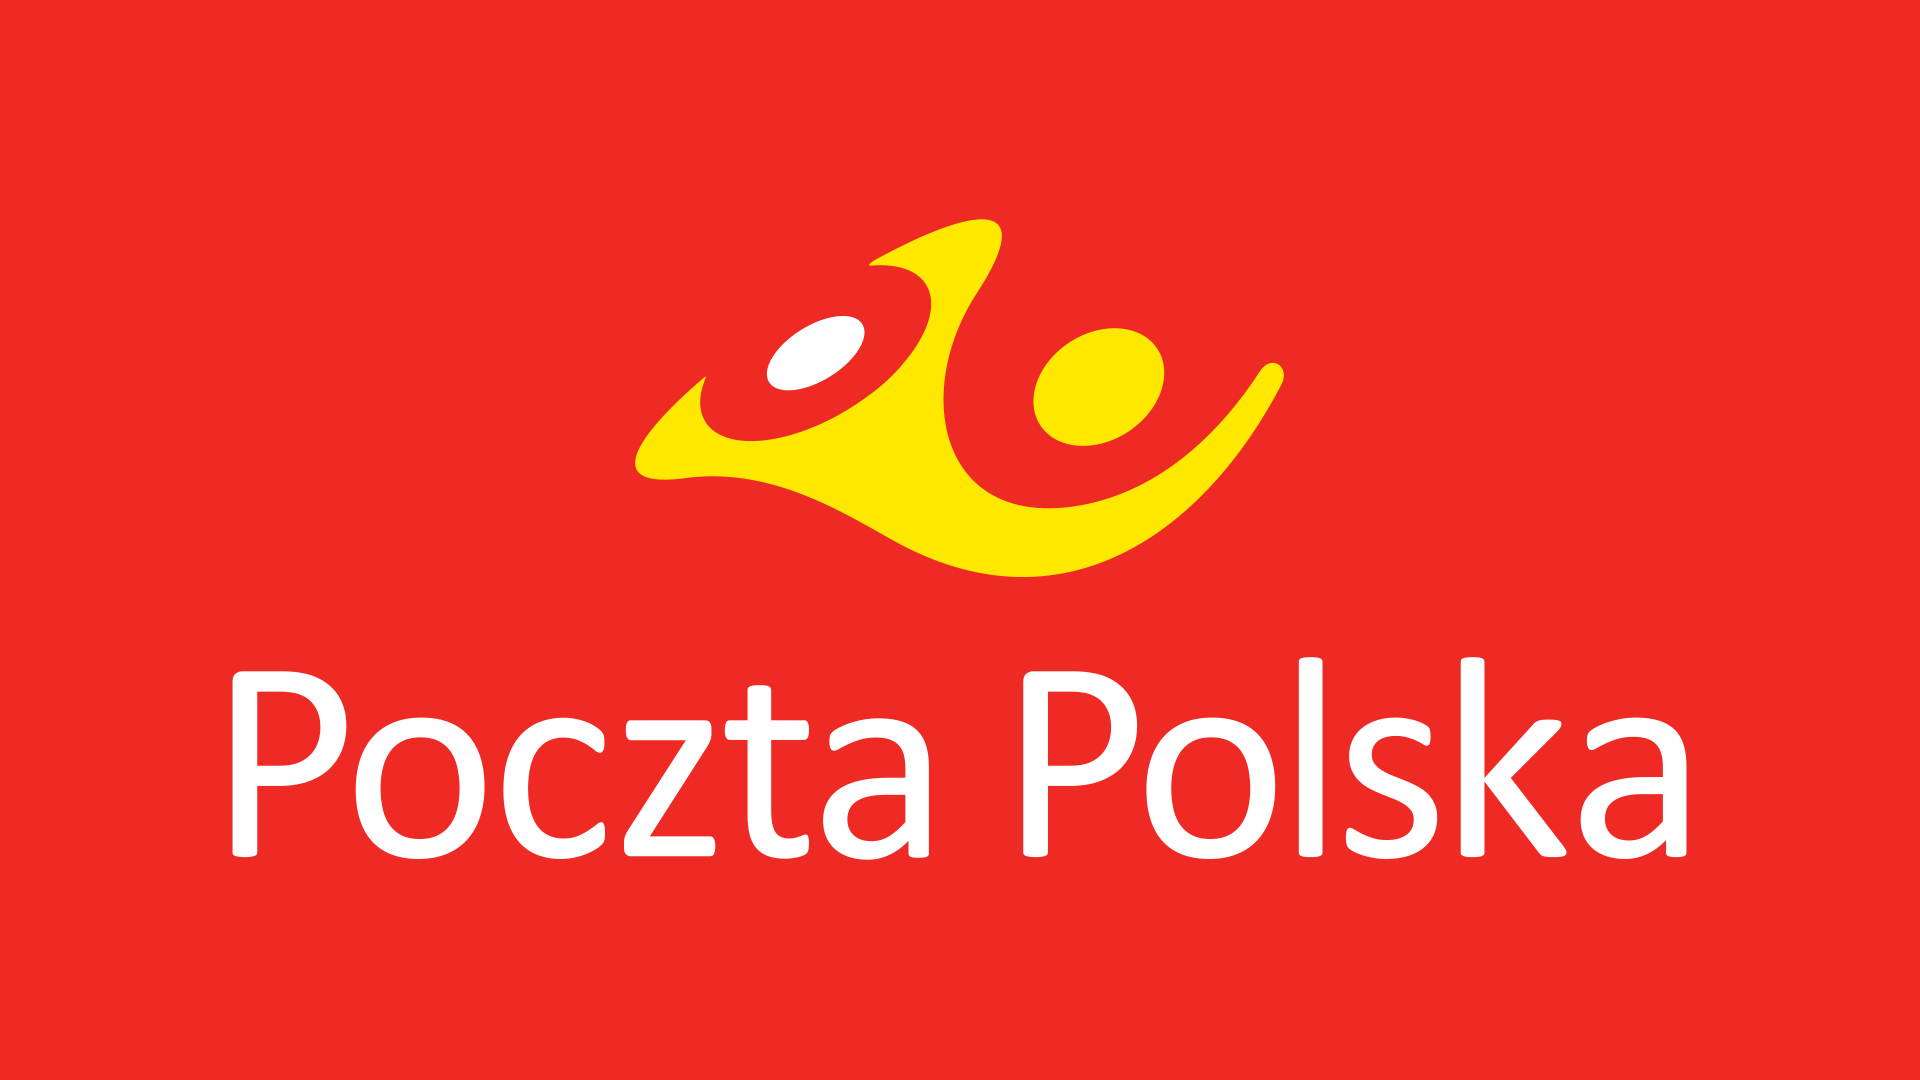 Przenajświętsza Poczta Polska